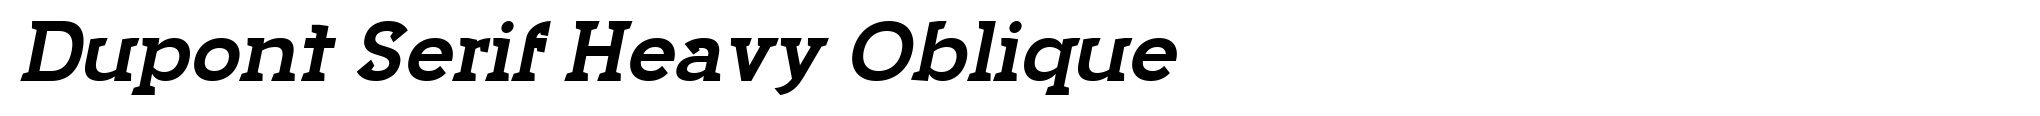 Dupont Serif Heavy Oblique image